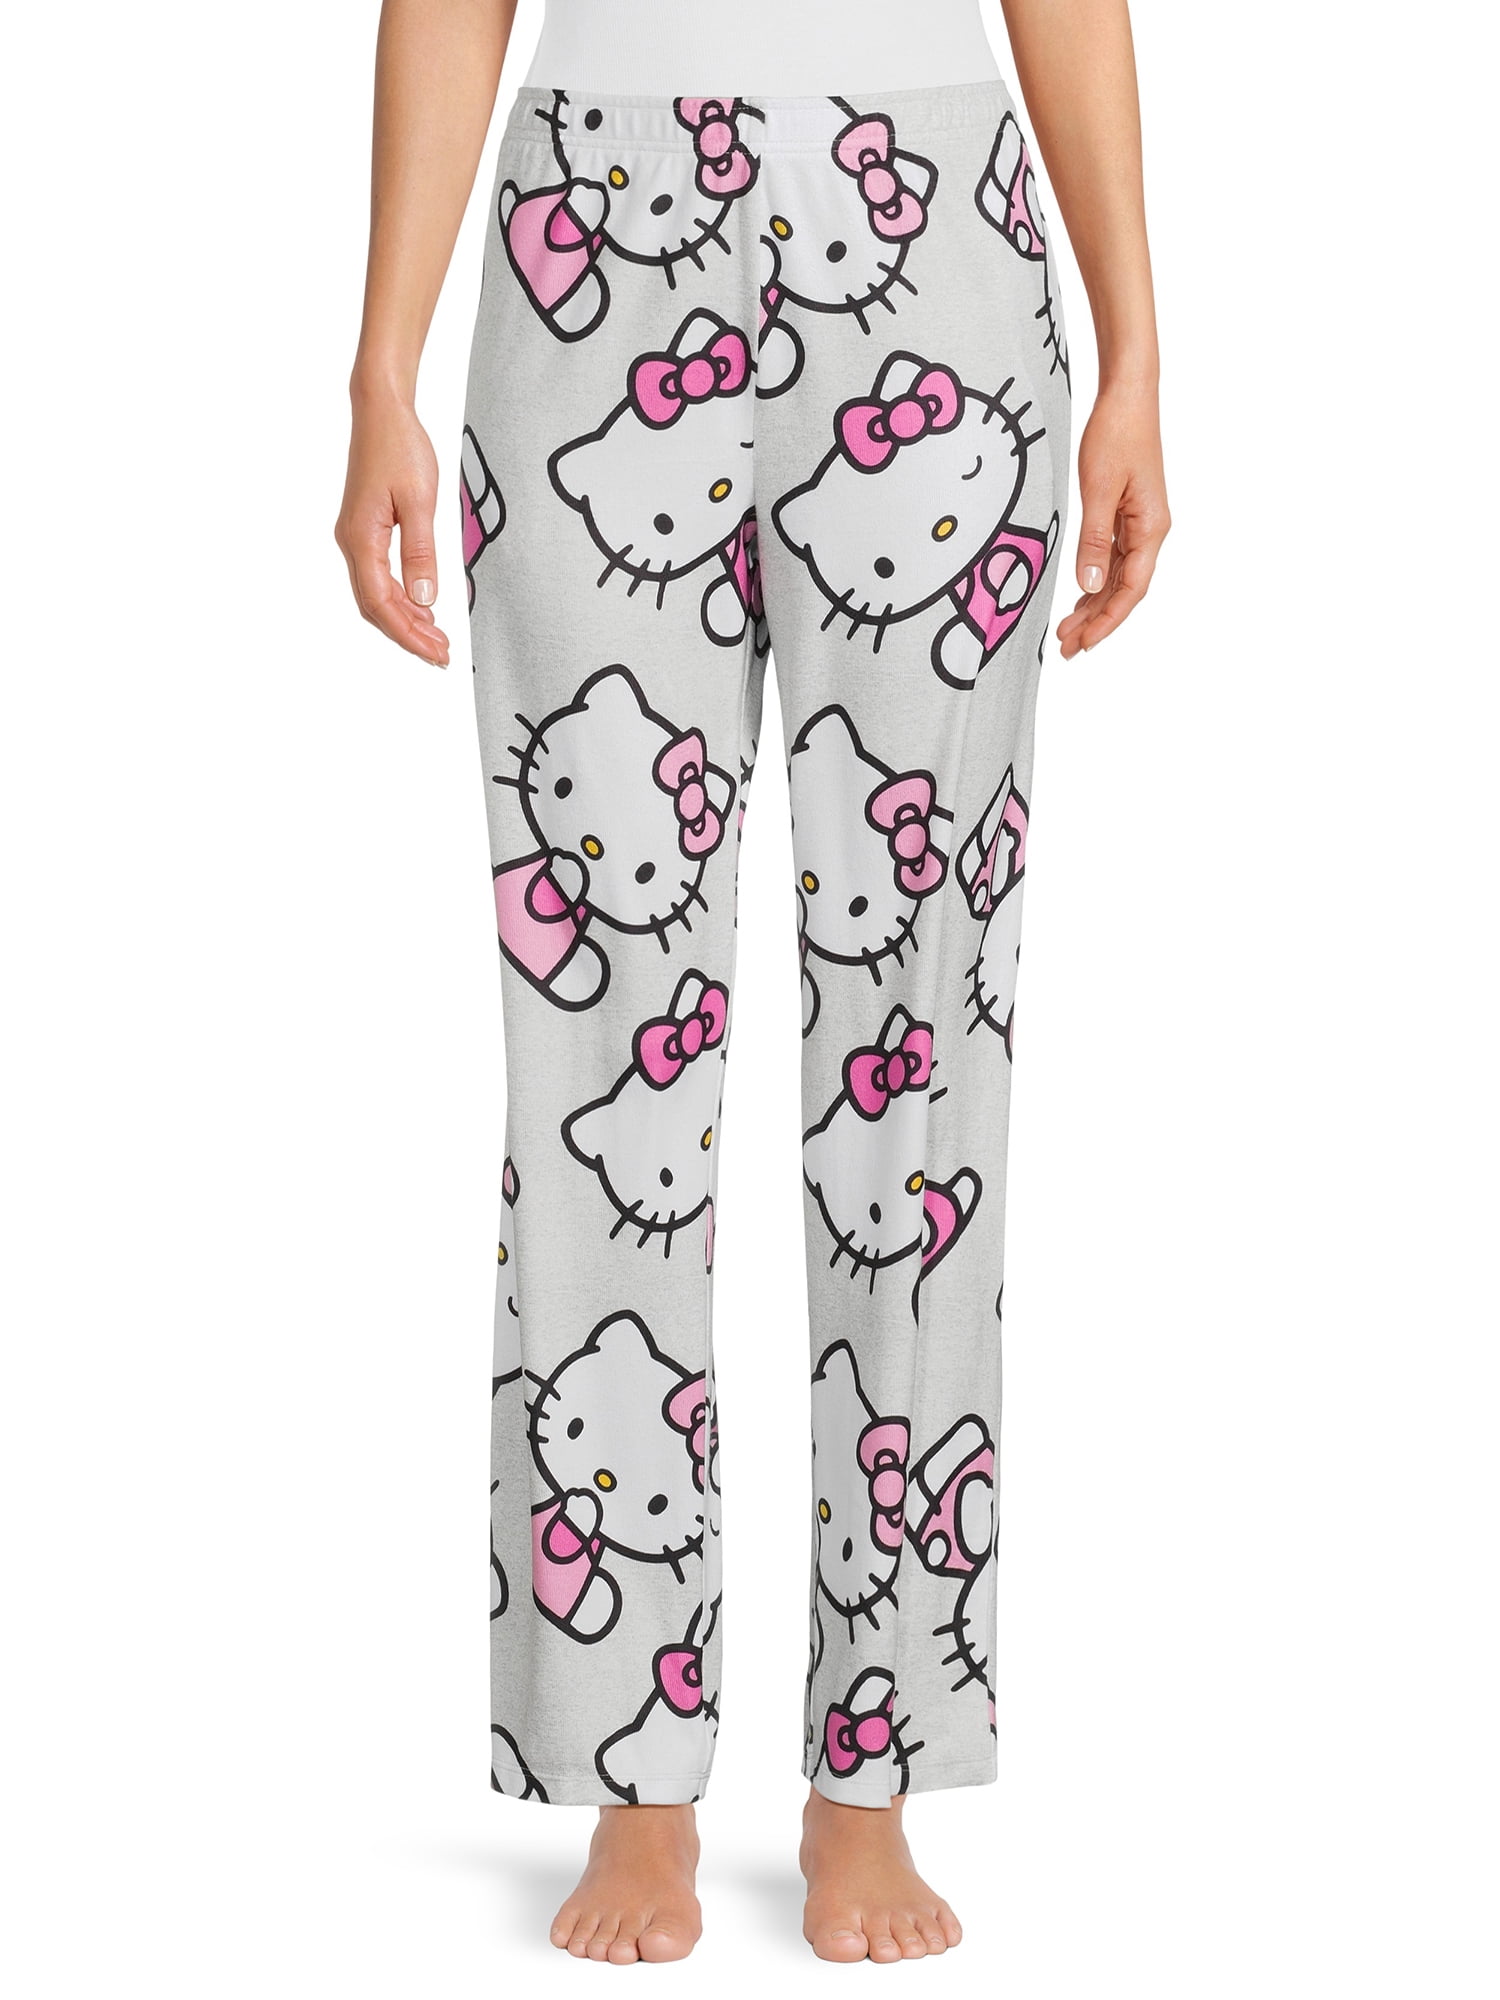 Hello Kitty Print Lounge Pants, Size XS-3X - Walmart.com